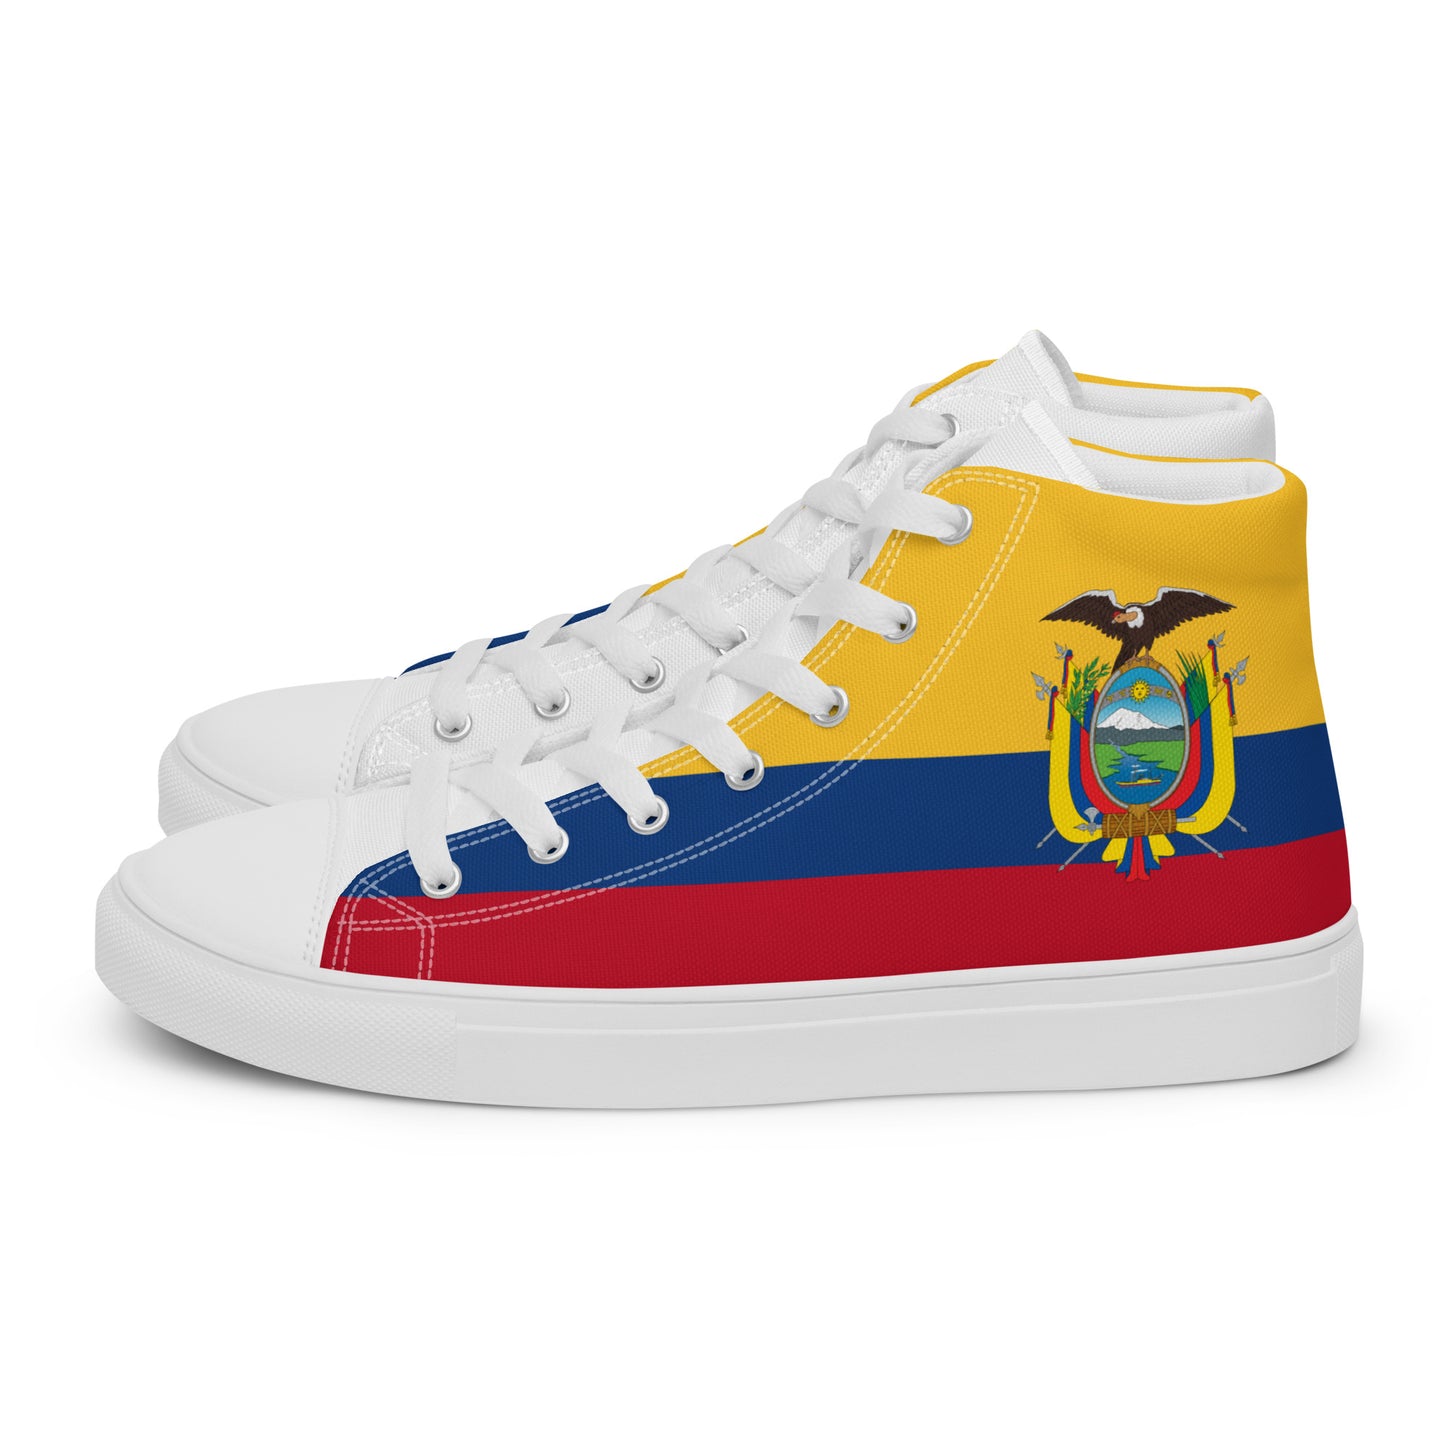 Ecuador - Women - Bandera - High top shoes